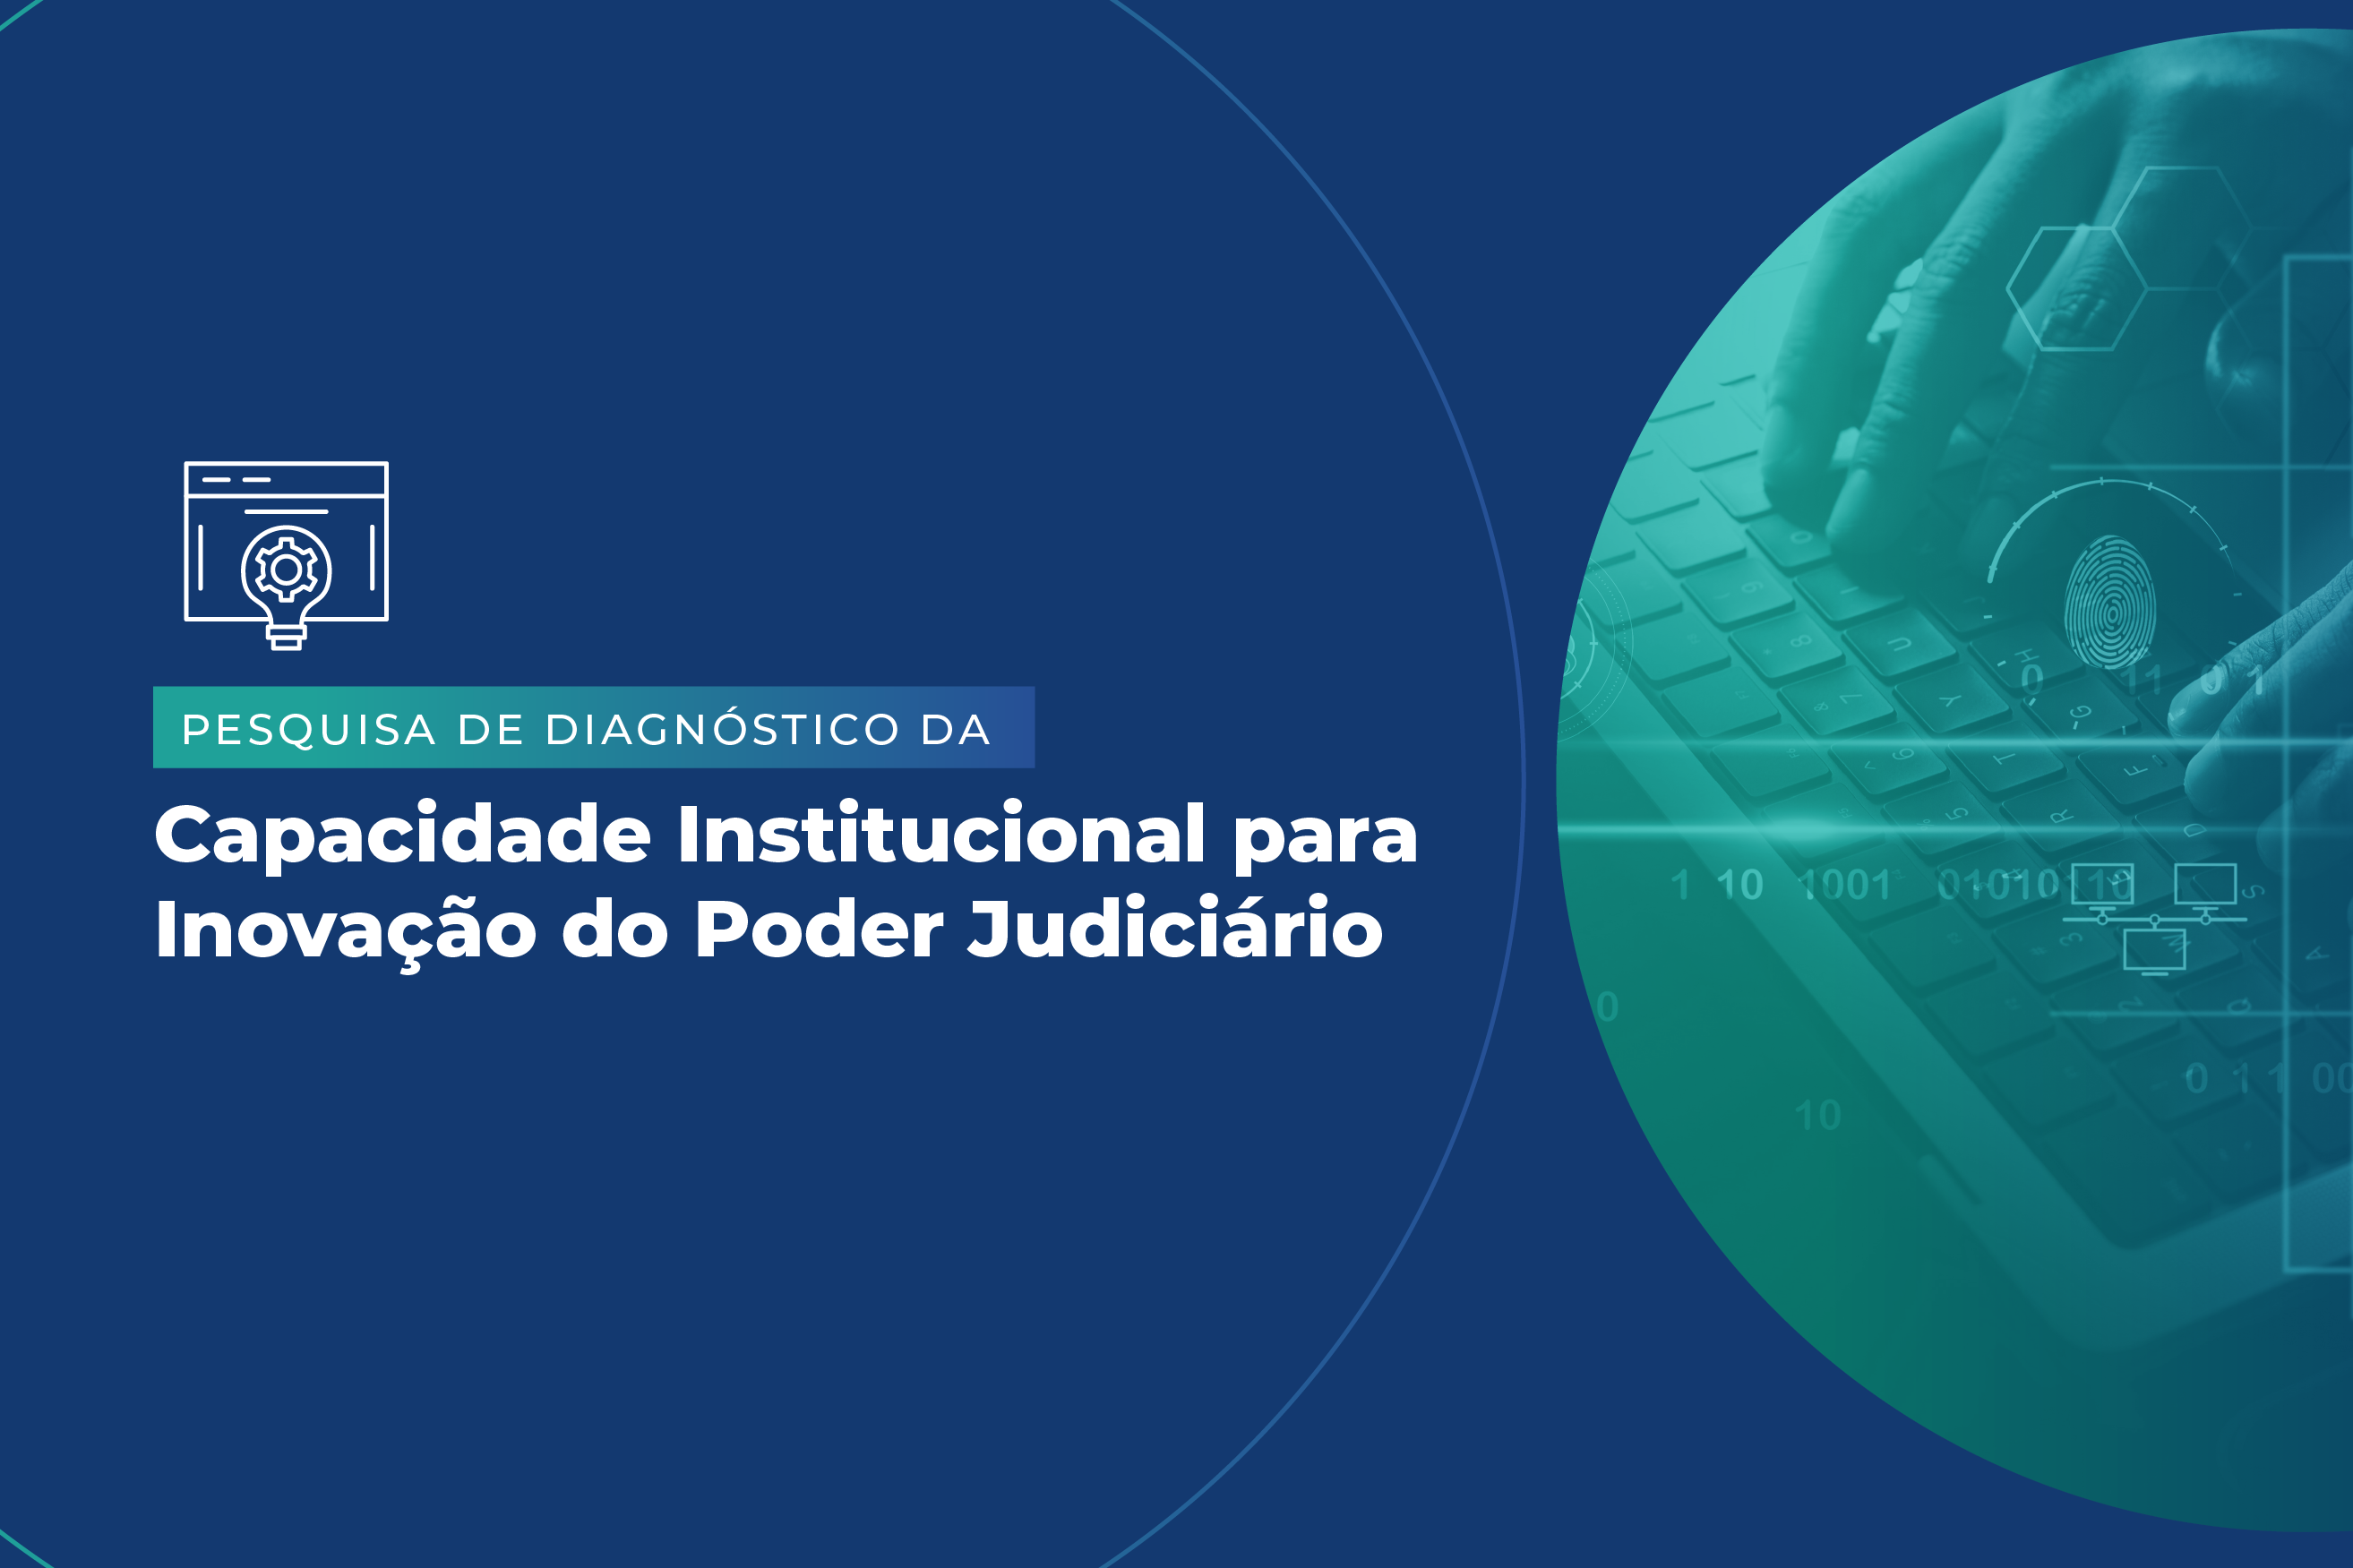 Pesquisa de Diagnóstico da Capacidade Institucional para Inovação do Poder Judiciário